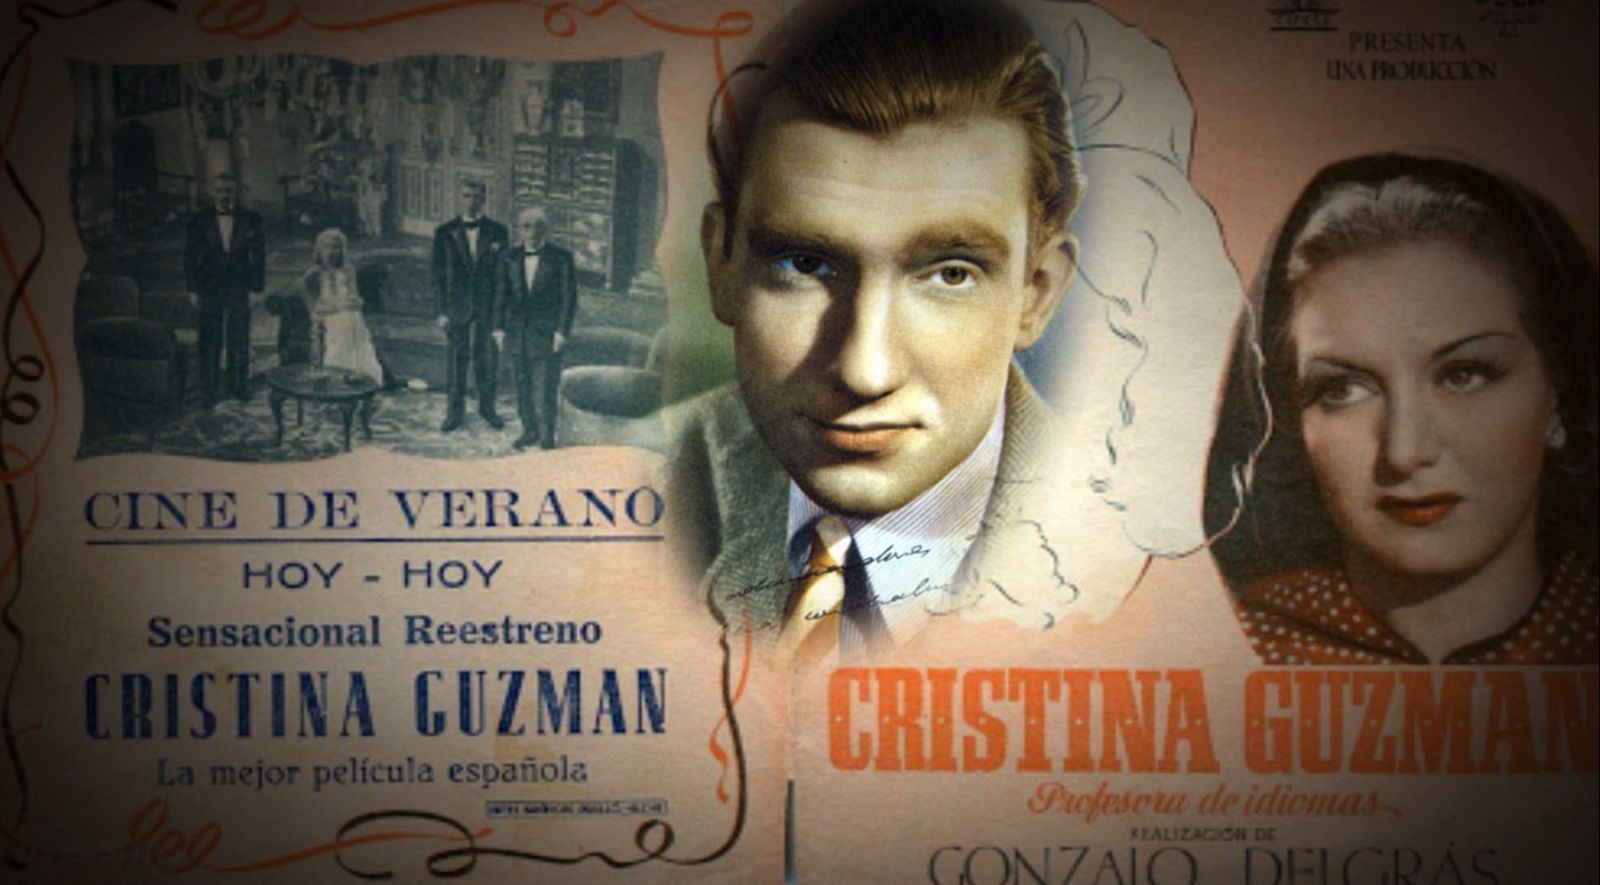 Debut de Fernando Fernán Gómez en el cine en 1941